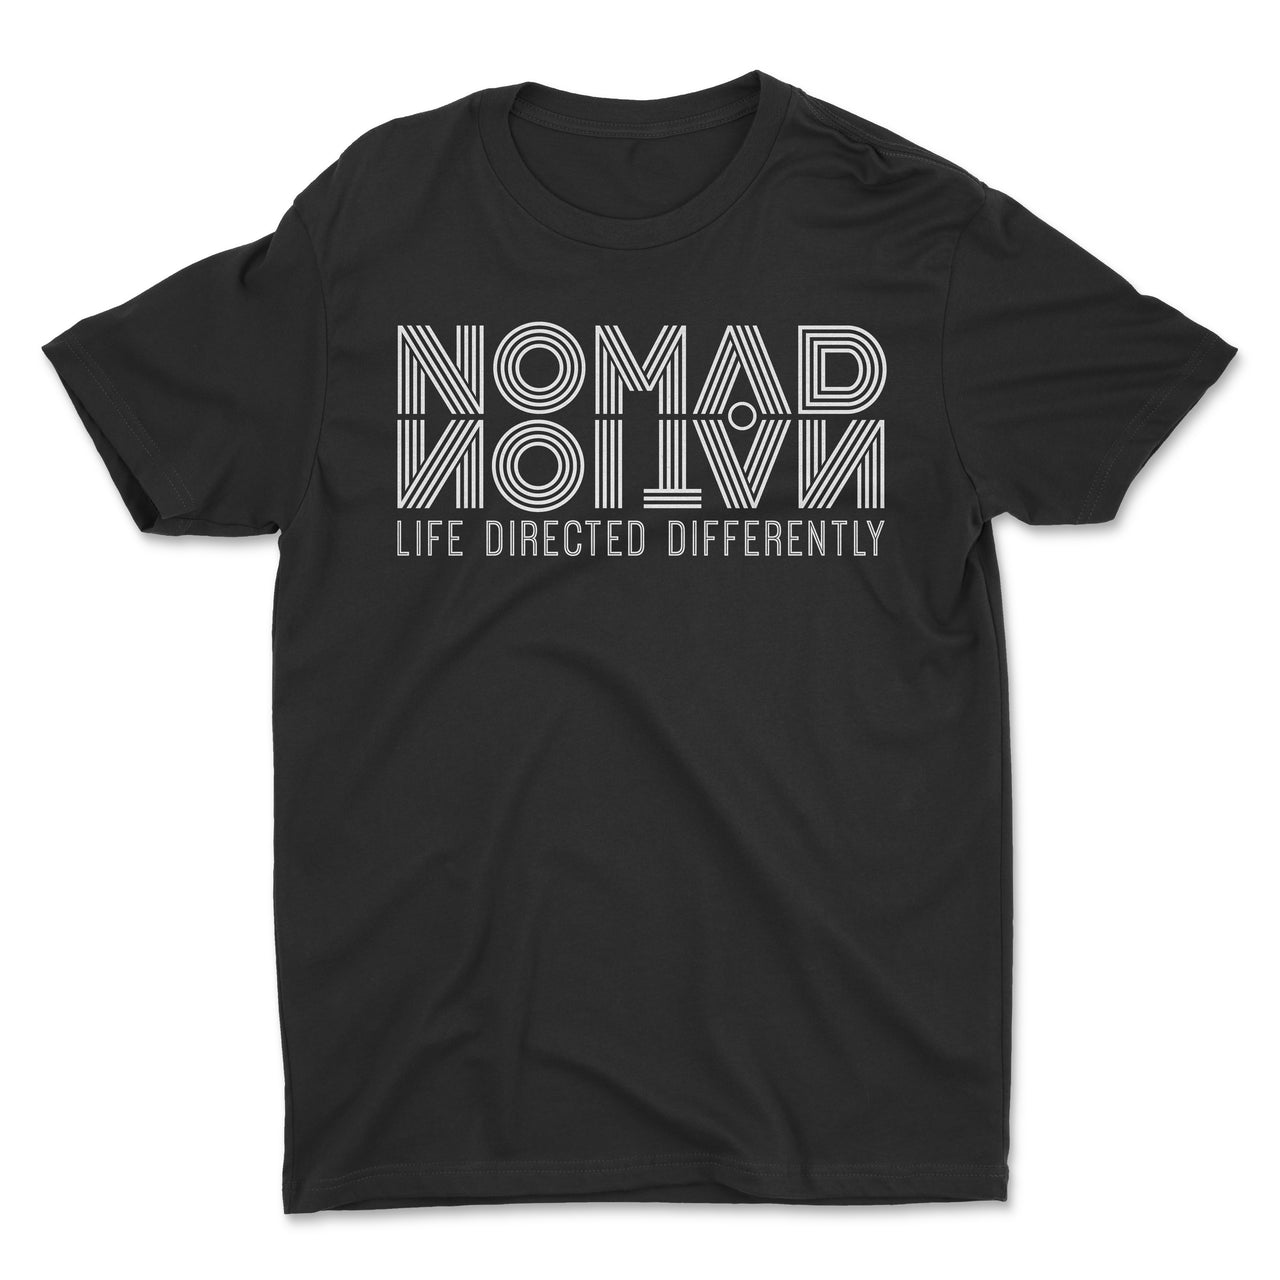 Nomad Nation Flipped Logo Shirt